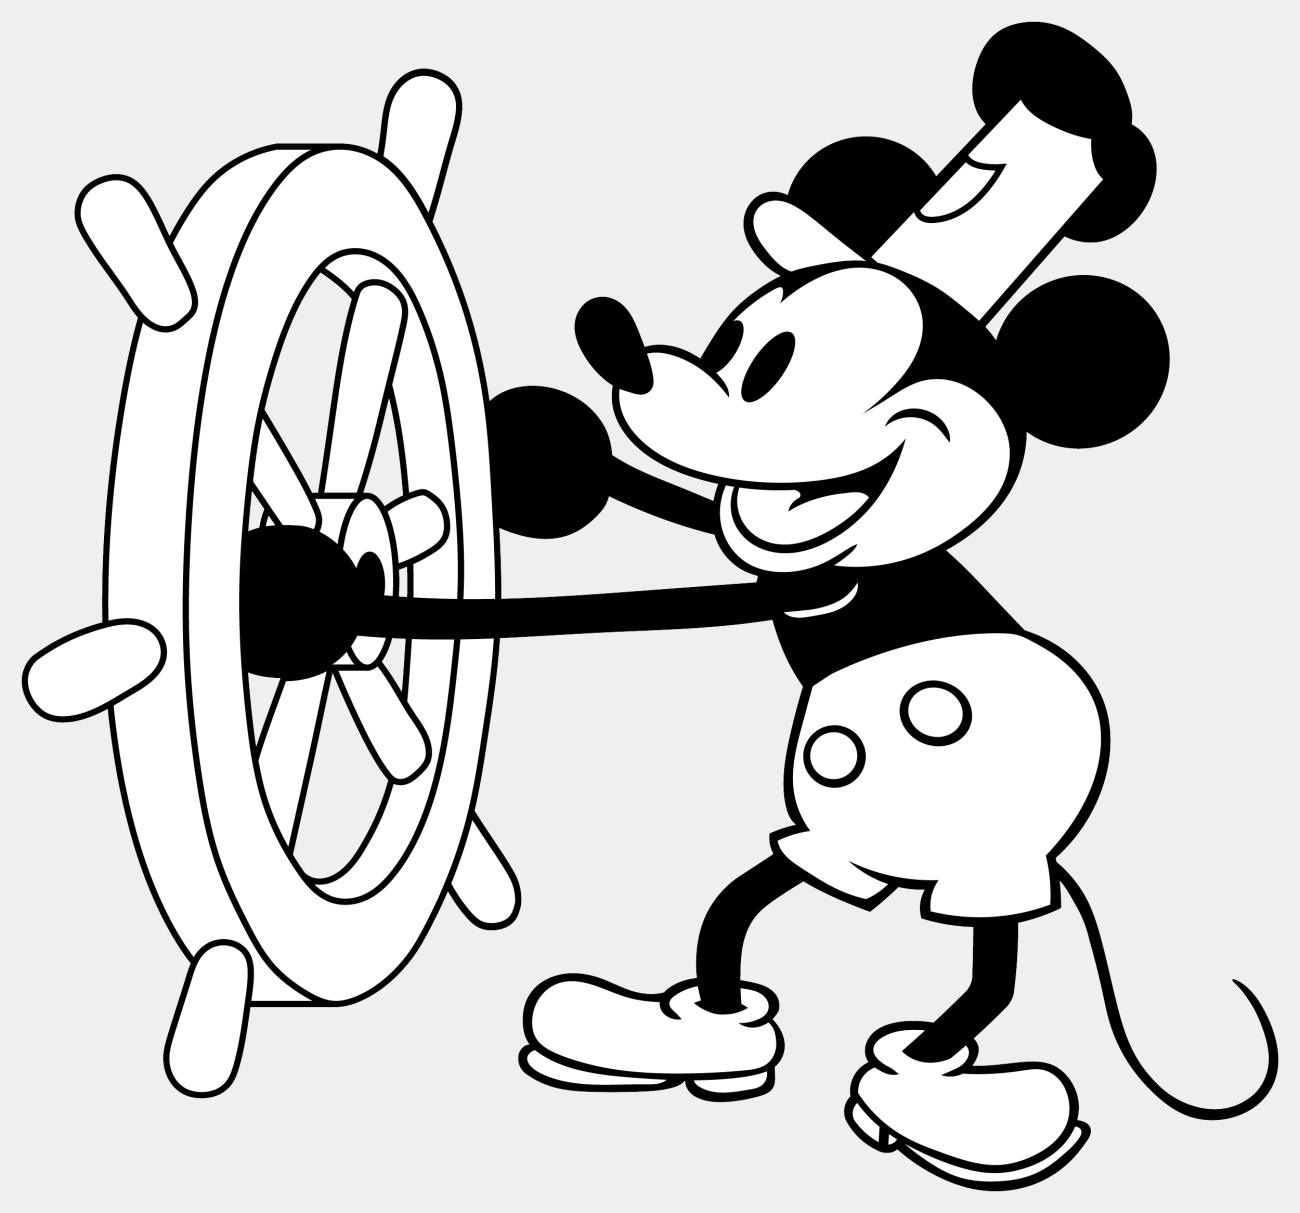 O Mickey vai entrar em domínio público em 2024; o que vai mudar